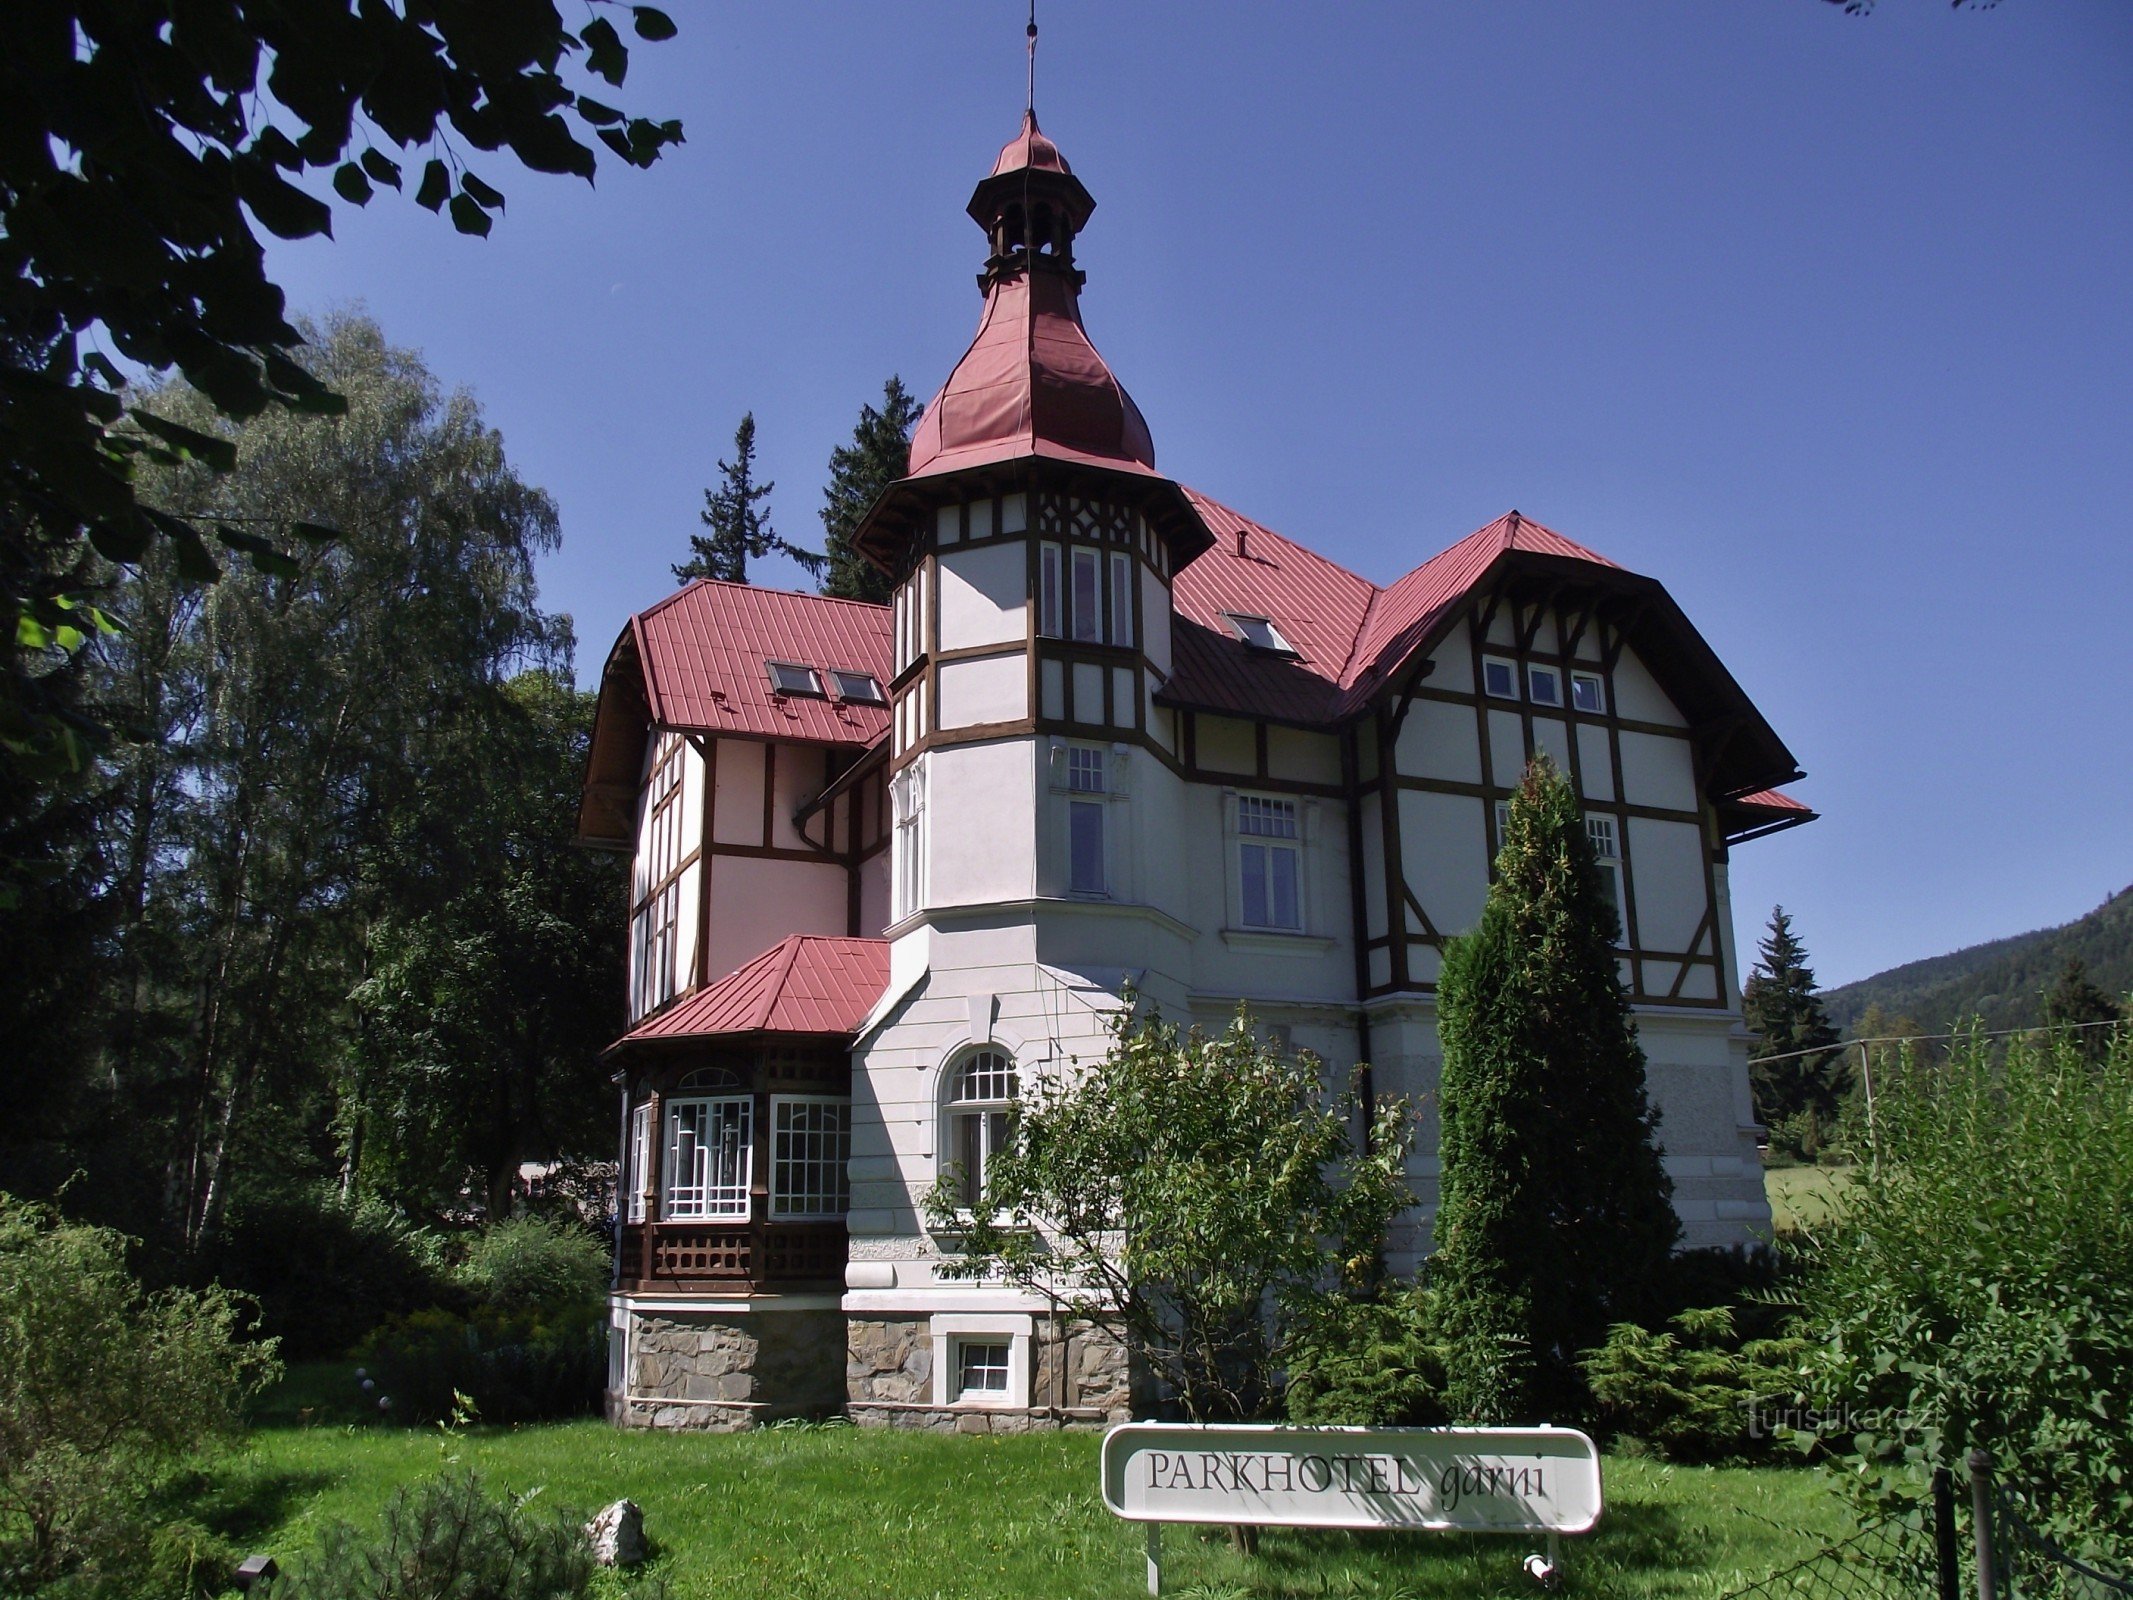 Vrbno pod Pradědem – Art Nouveau Grohmann villa (Parkhotel garni)